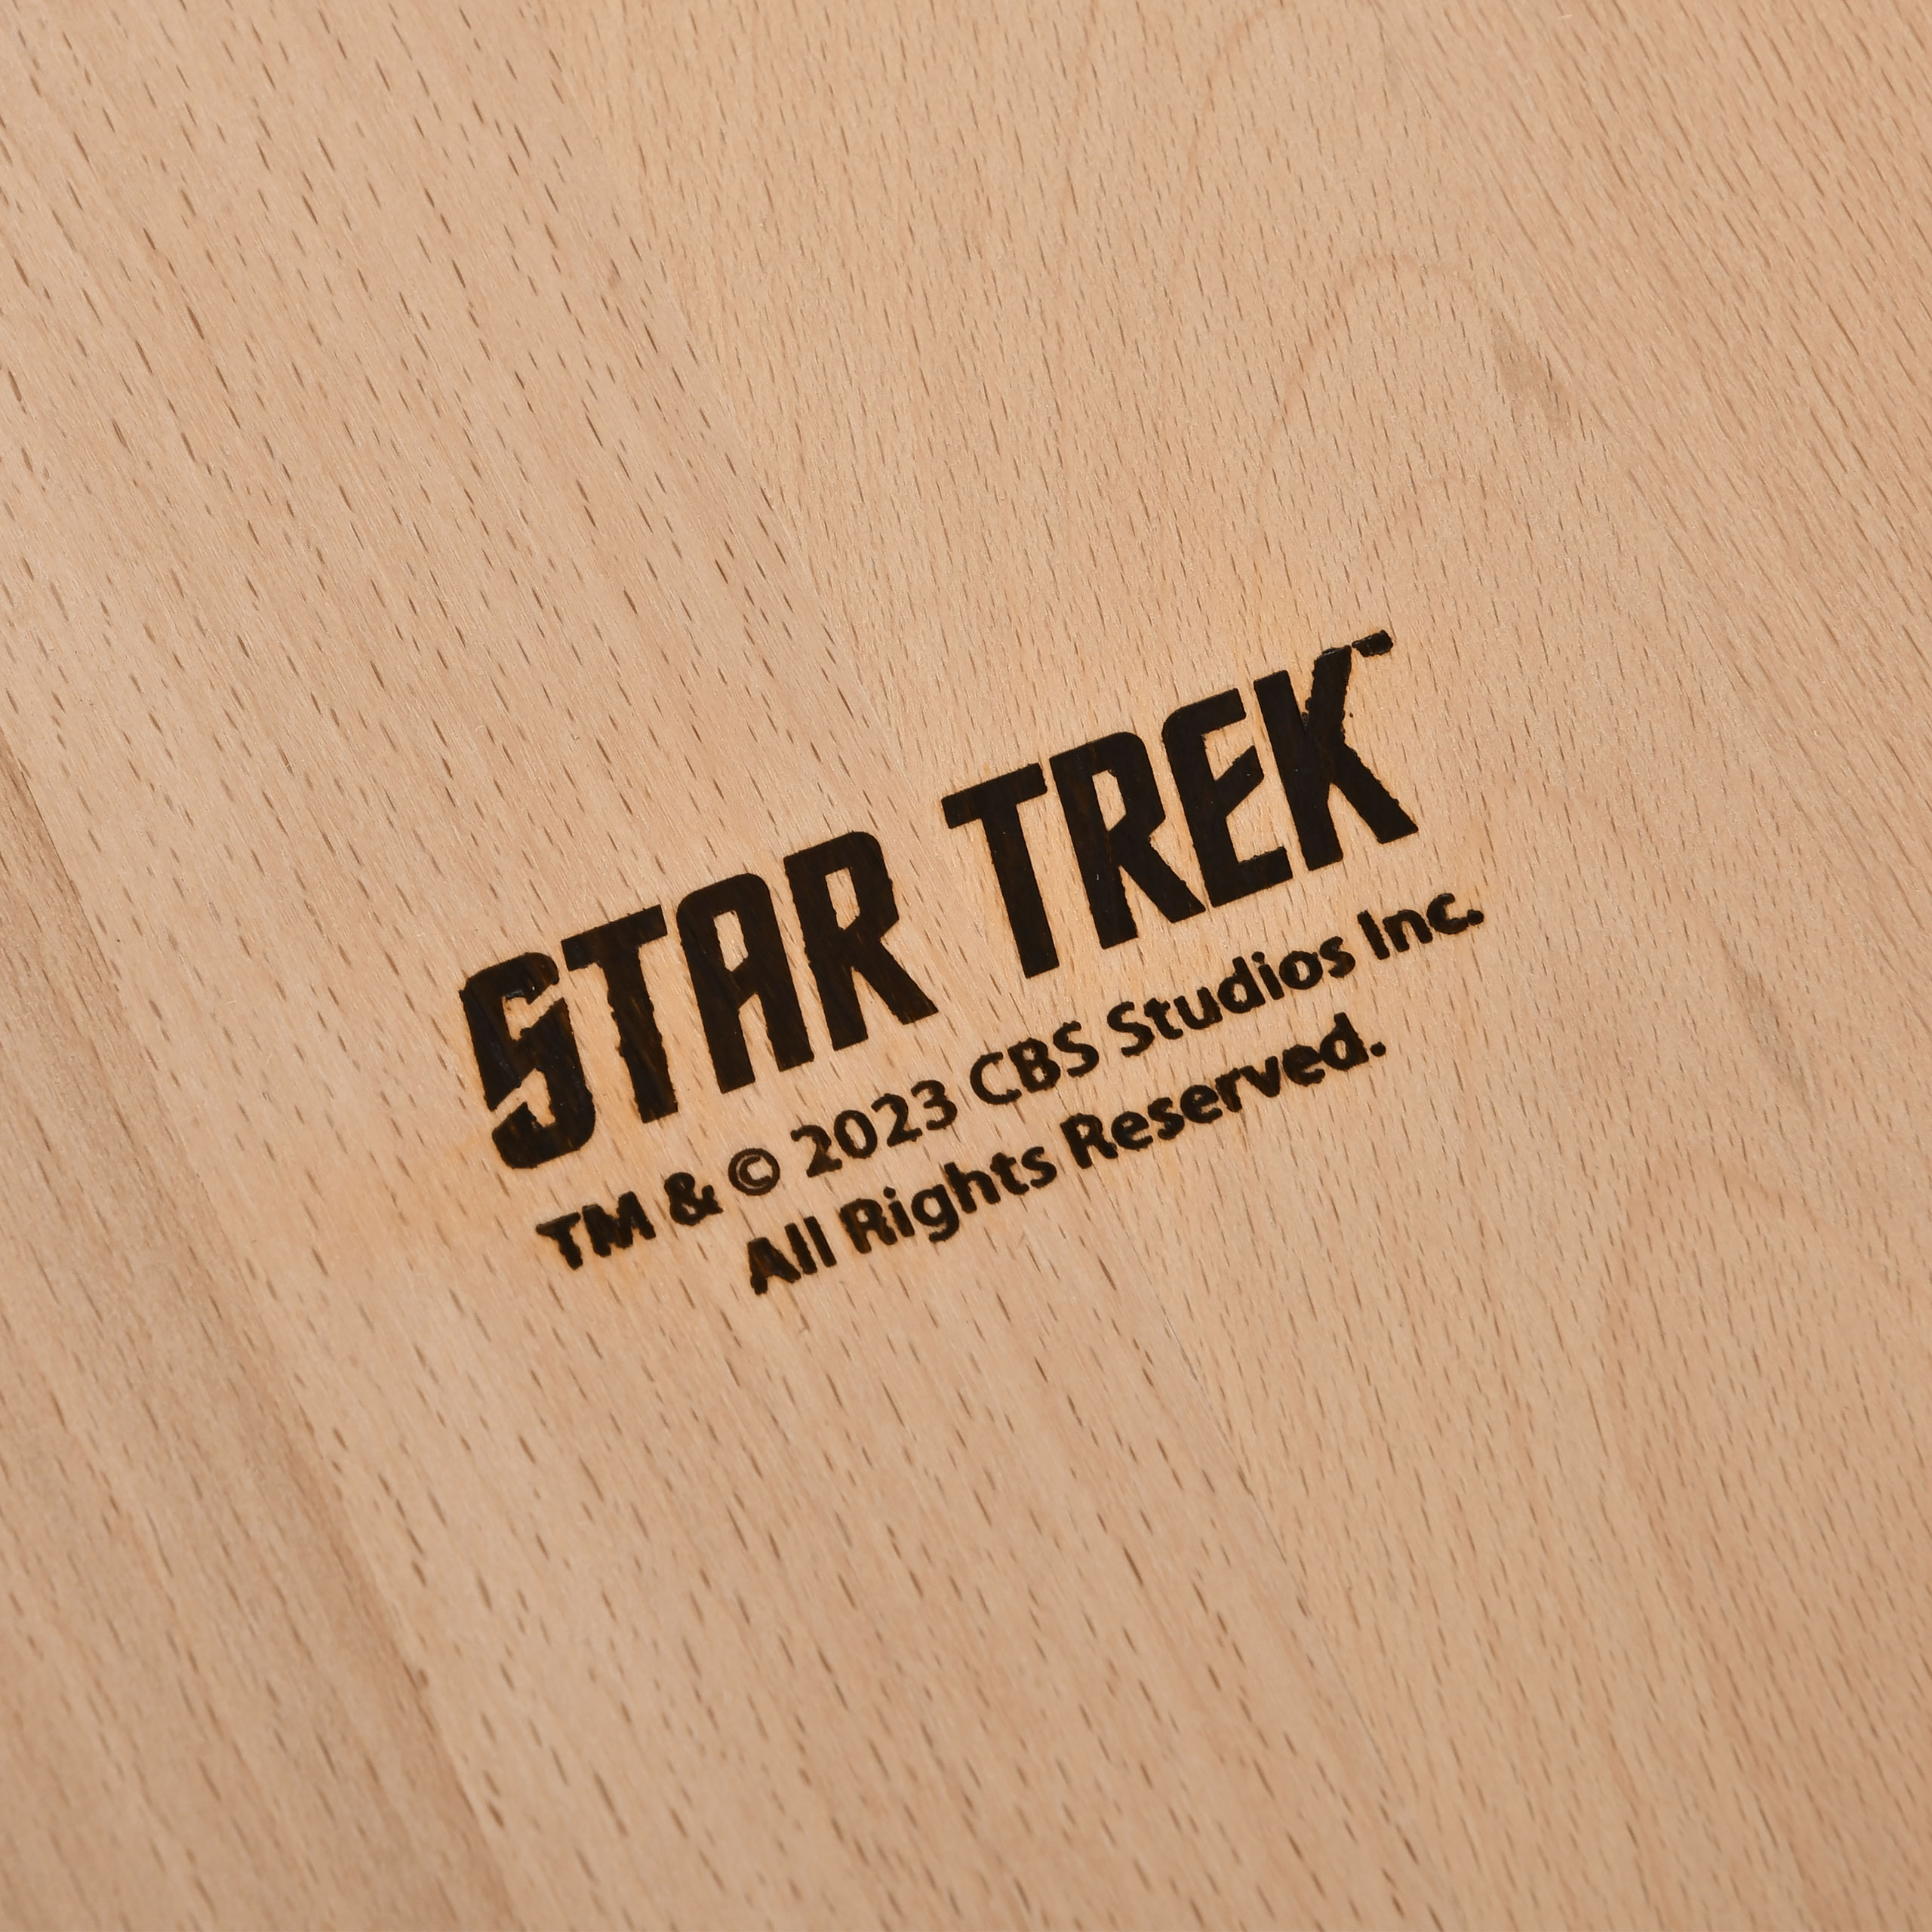 Star Trek - U.S.S. Enterprise Snijplank